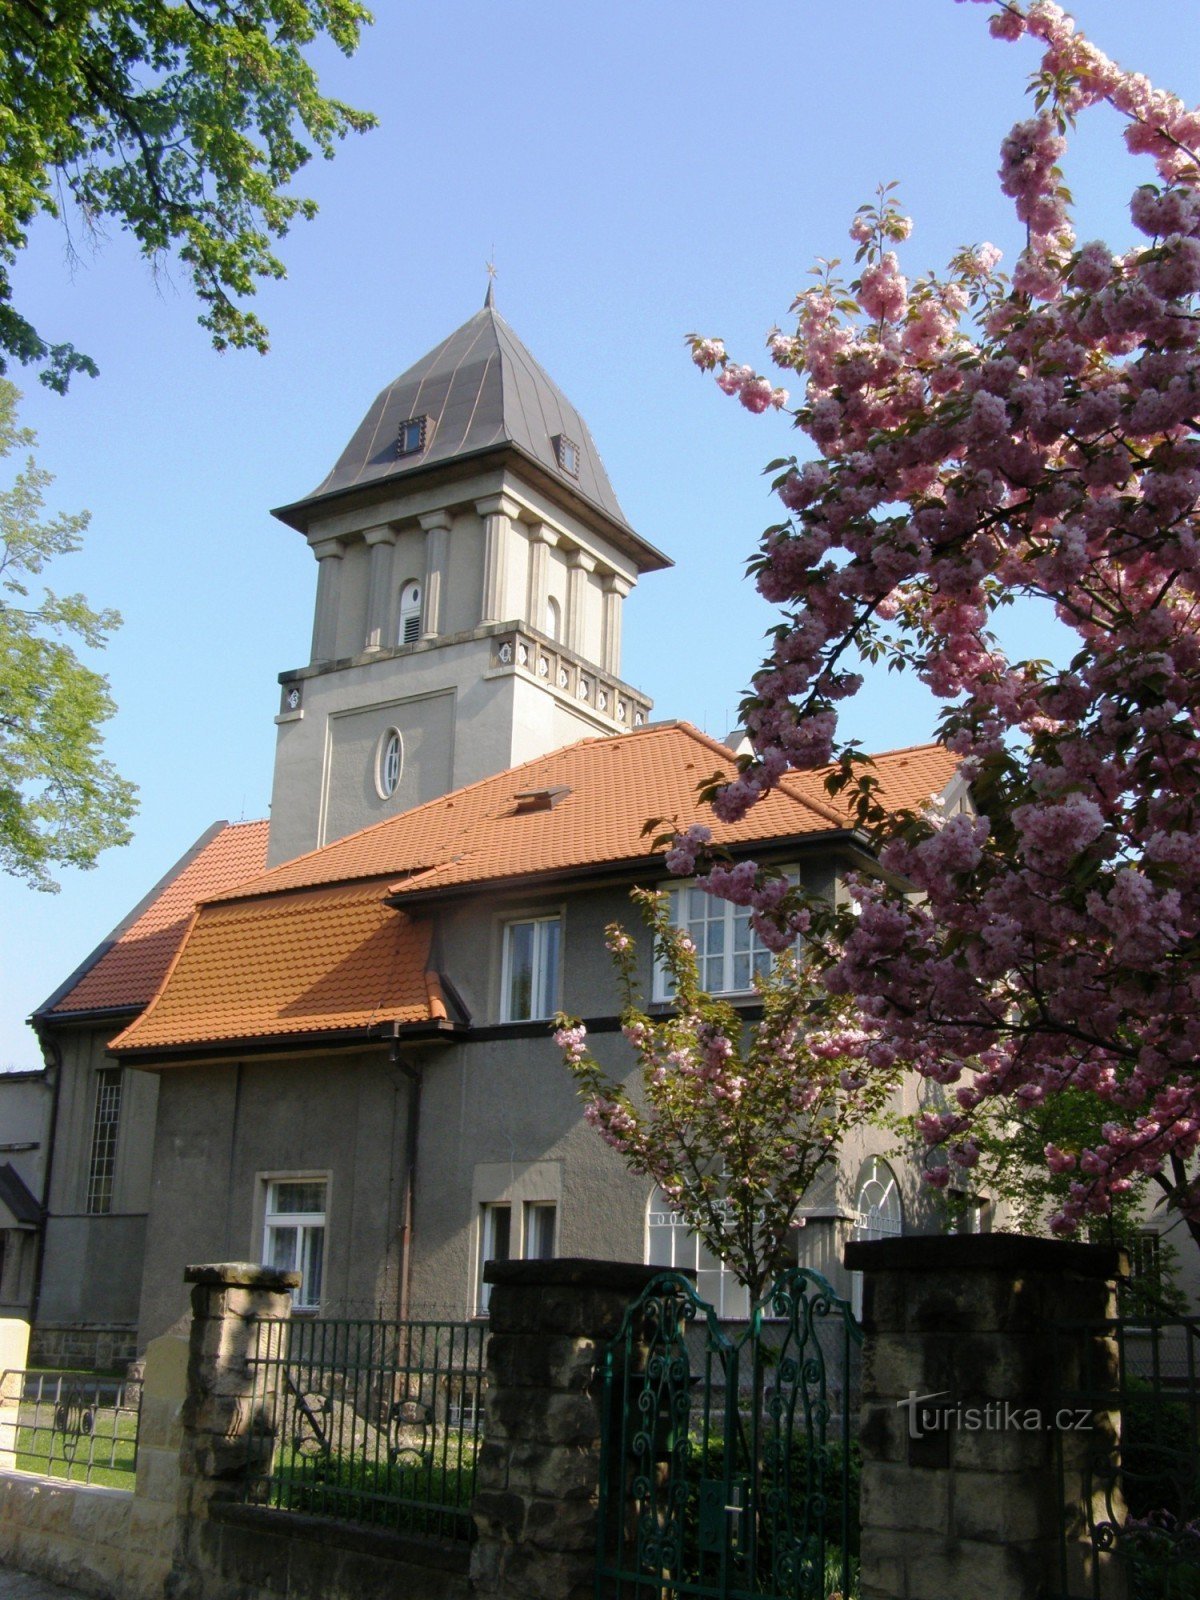 Tšekin veljien kirkko Hradec Královéssa